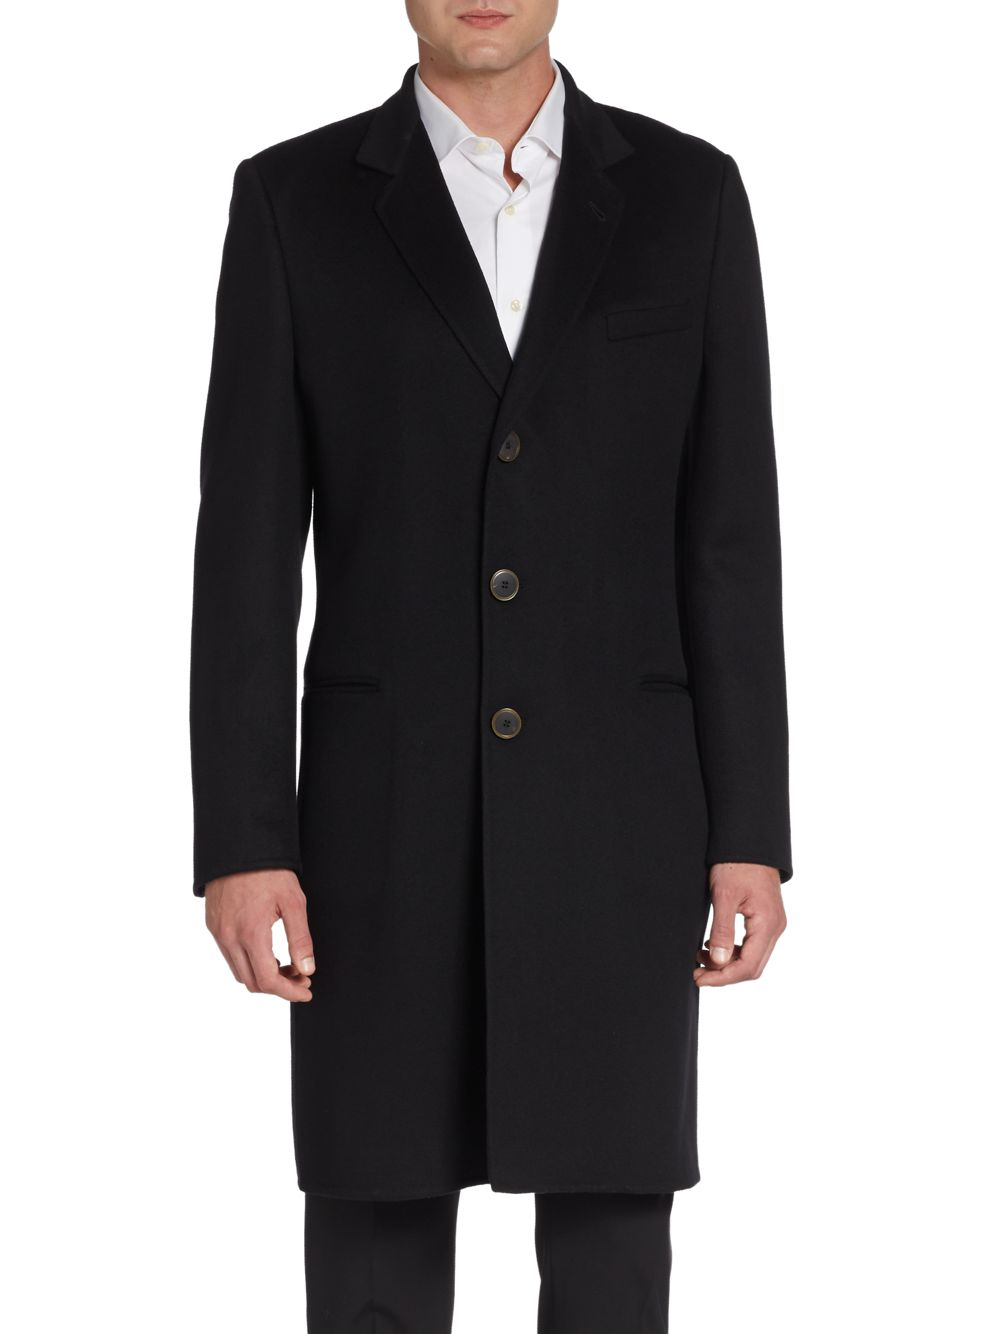 Giorgio Armani Cashmere Coat in Black for Men - Lyst